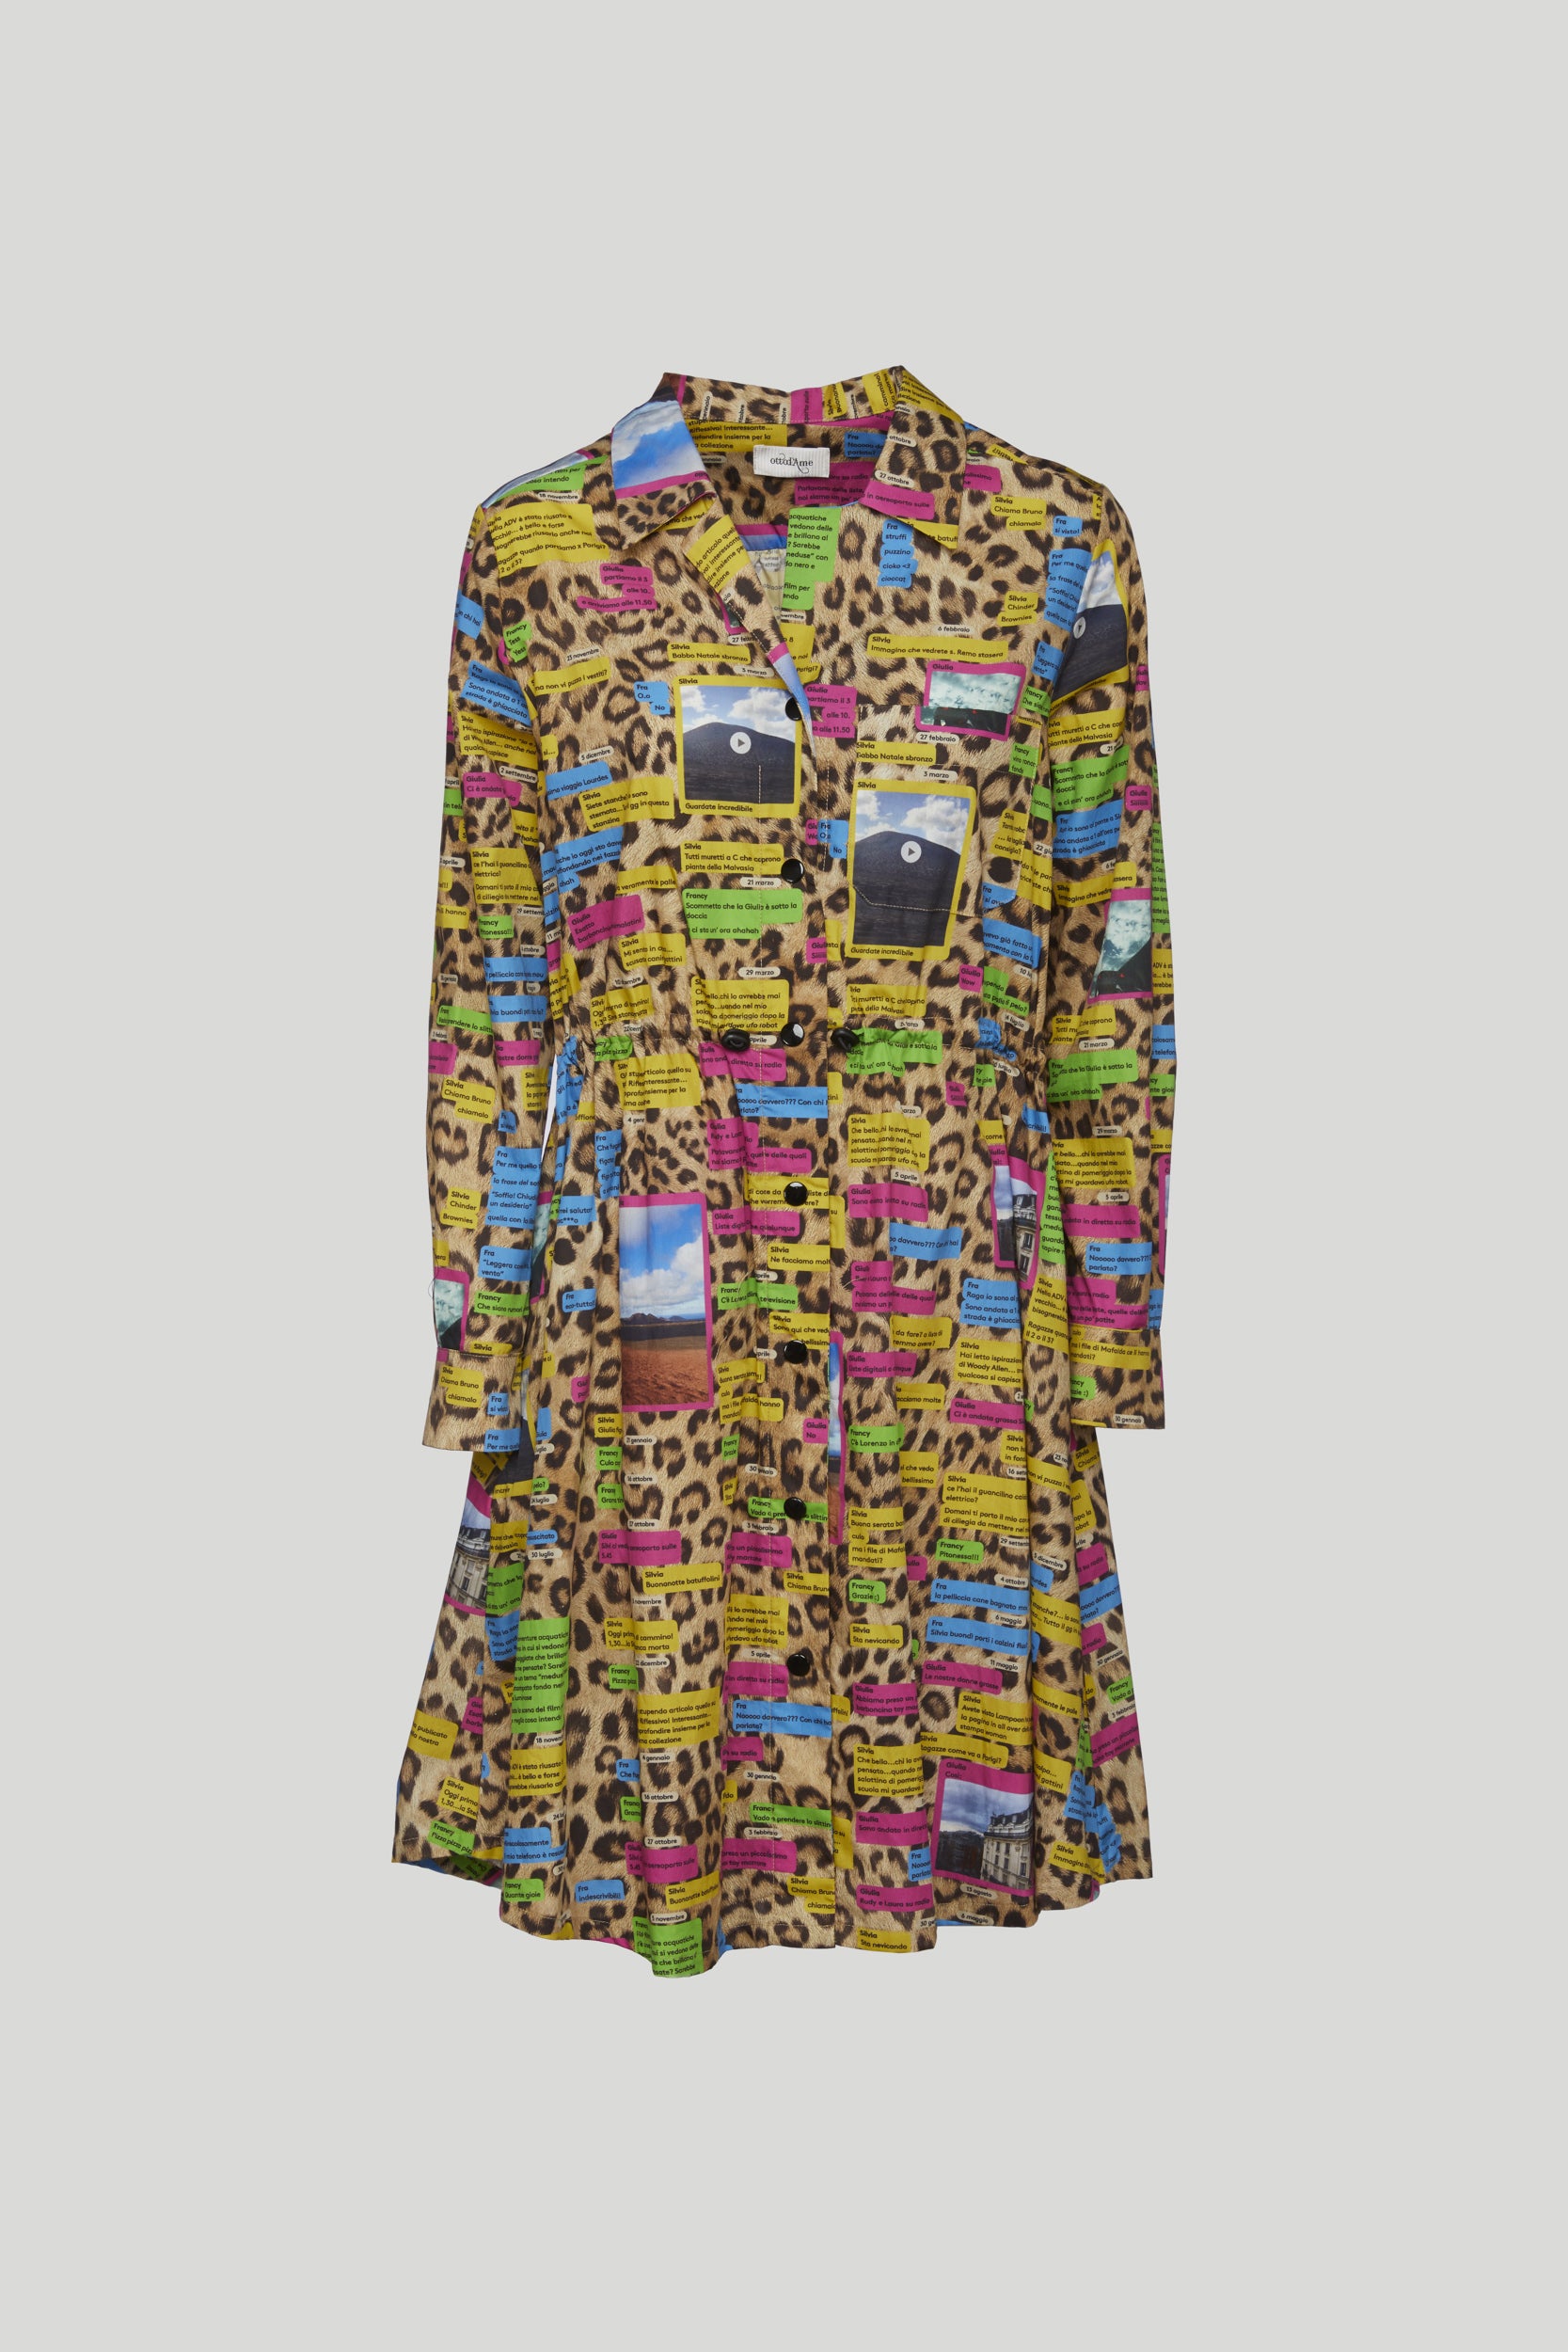 OTTOD'AME Chemisier-Kleid "Postcard" mit Leopardenmuster